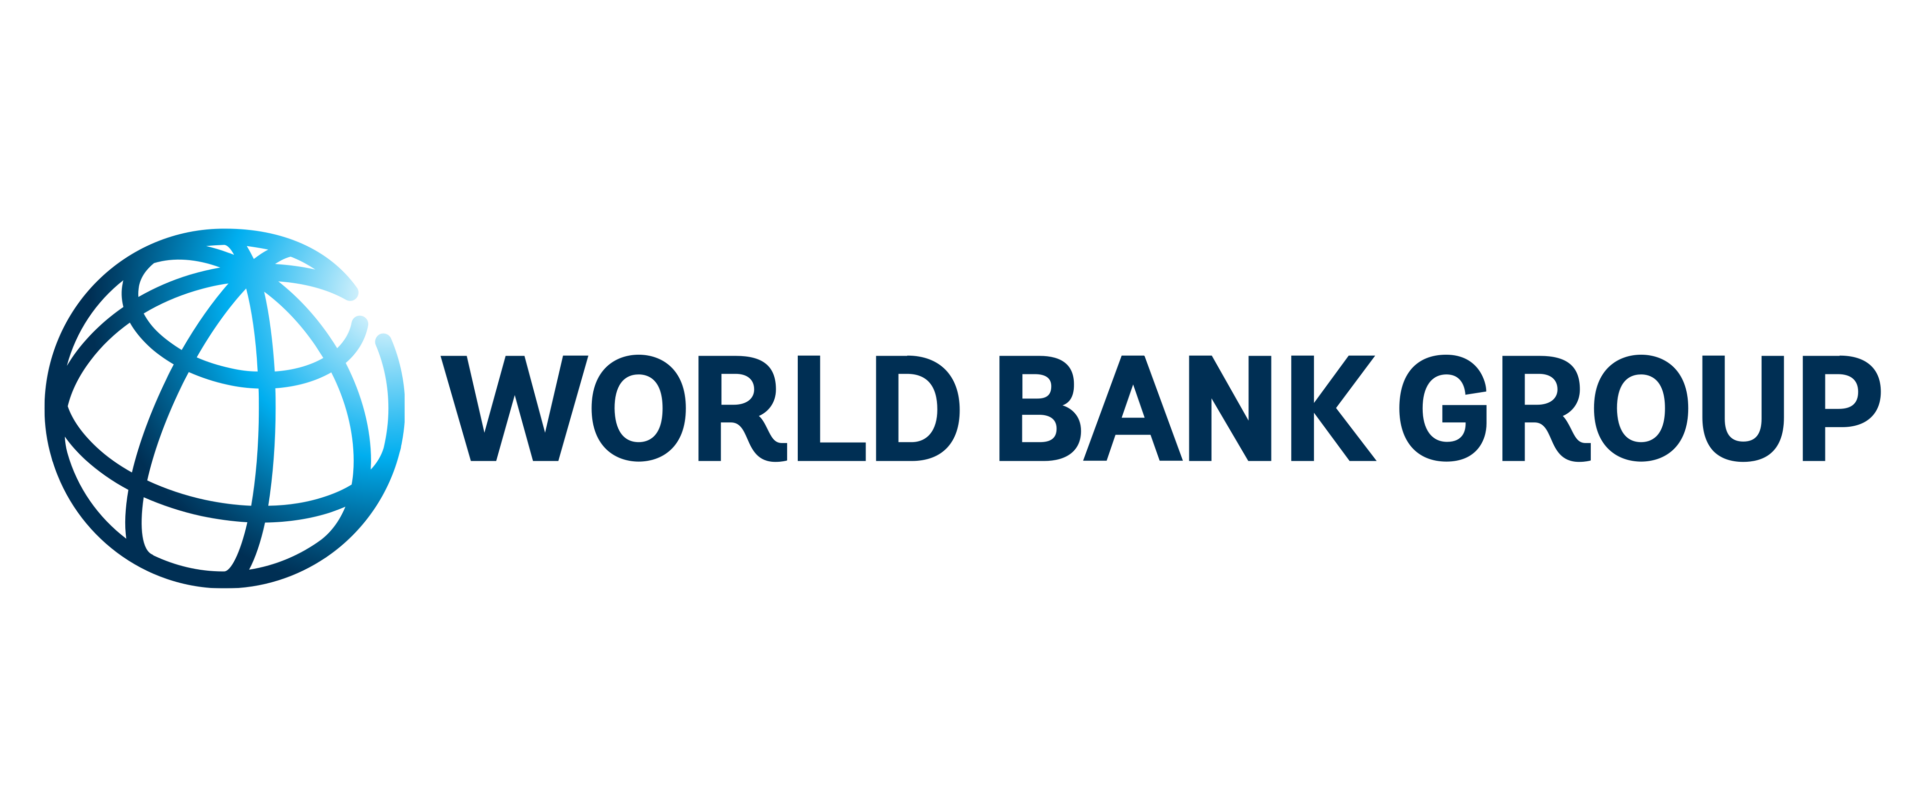 Международный банк сайт. Всемирный банк логотип. Международный банк реконструкции и развития МБРР логотип. Группа Всемирного банка лого. Логотипы Мировых банков.